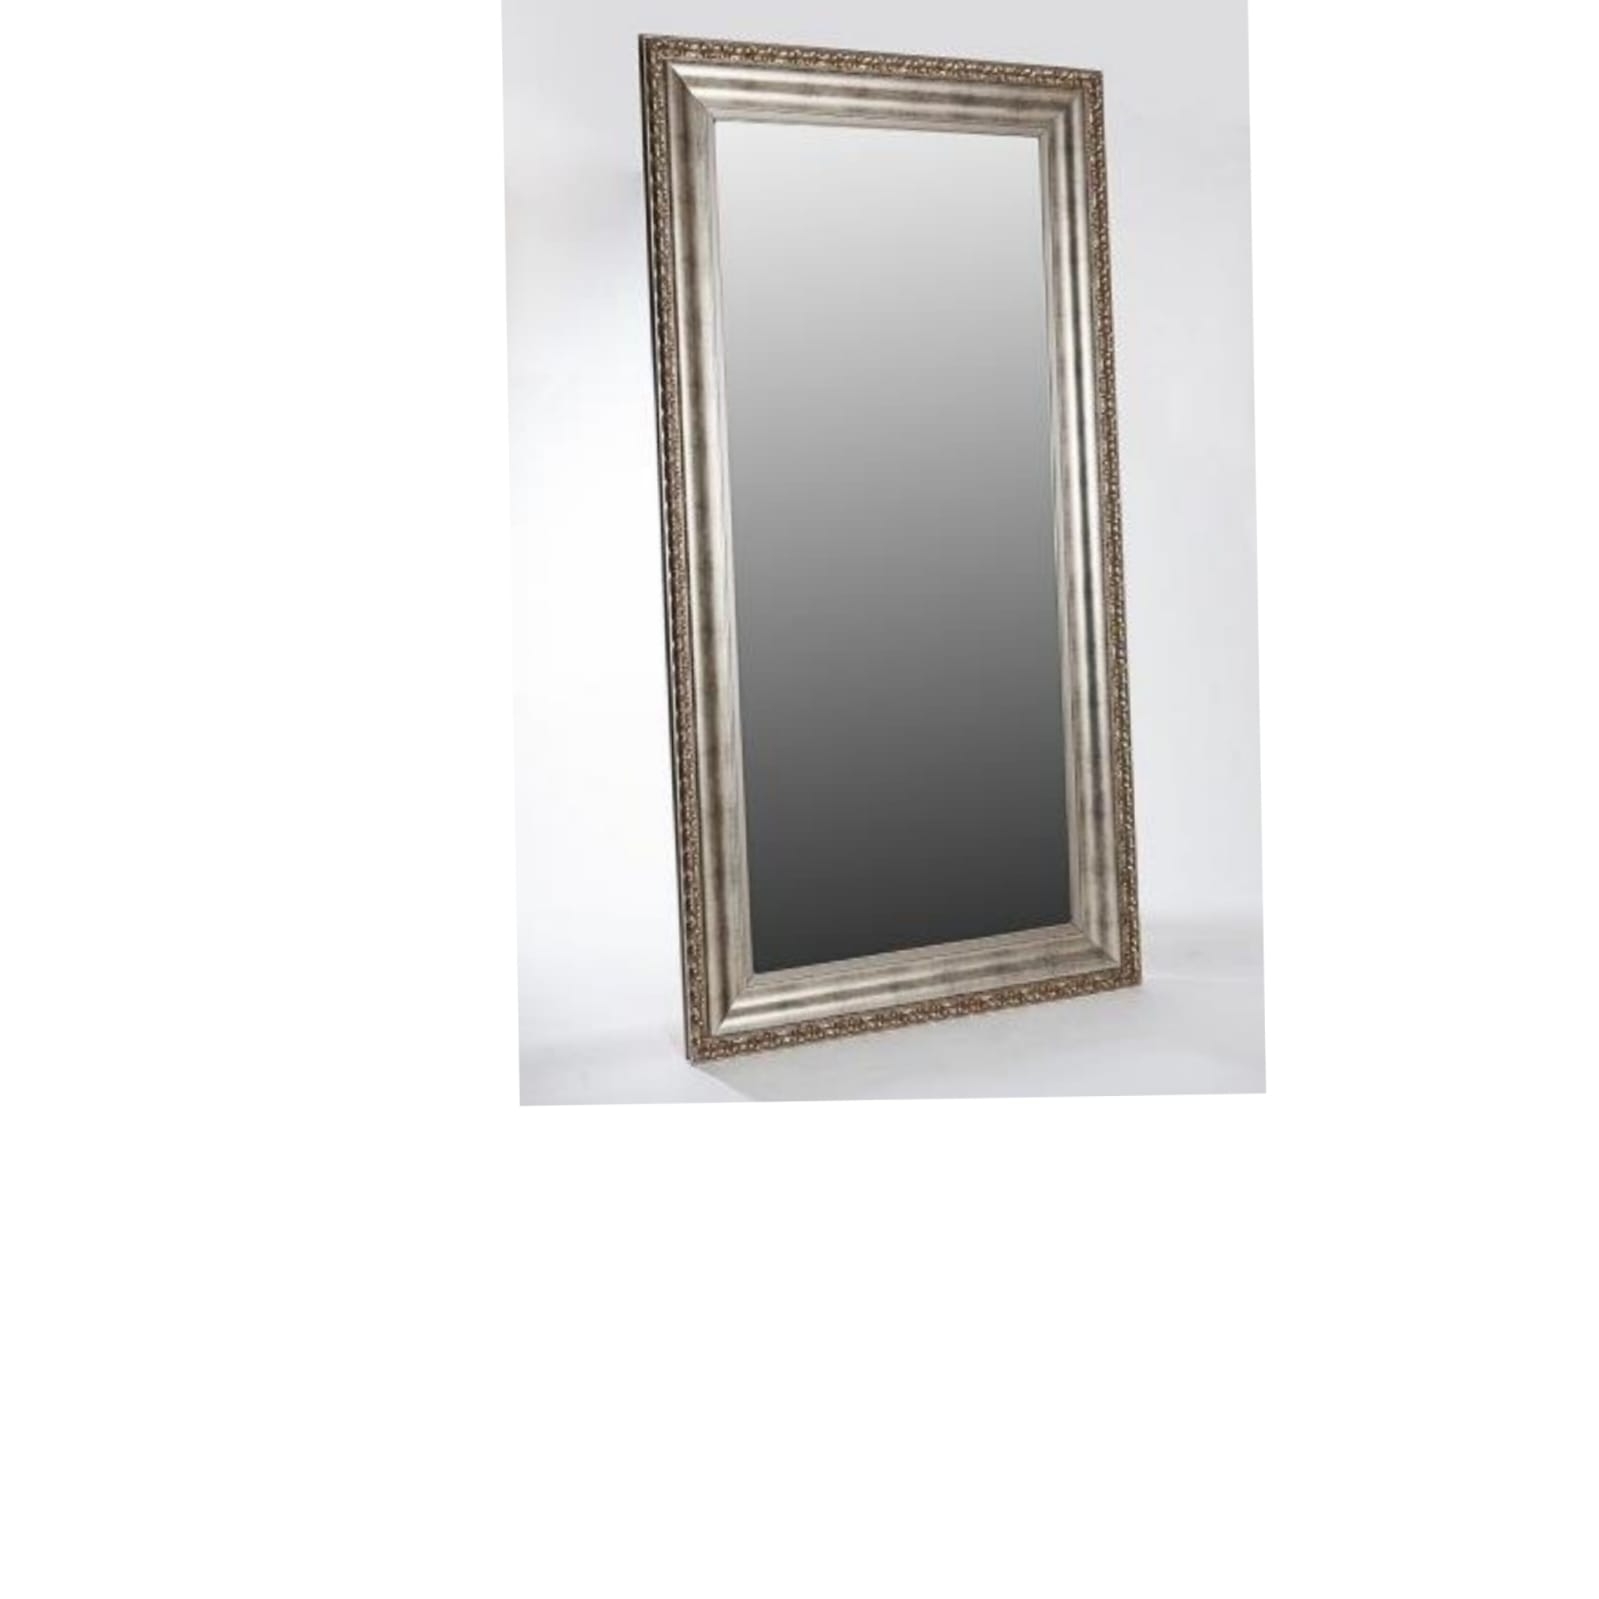 REF 4465 - Espelho Moldura Prateada 2,20 X 1,10 Cm